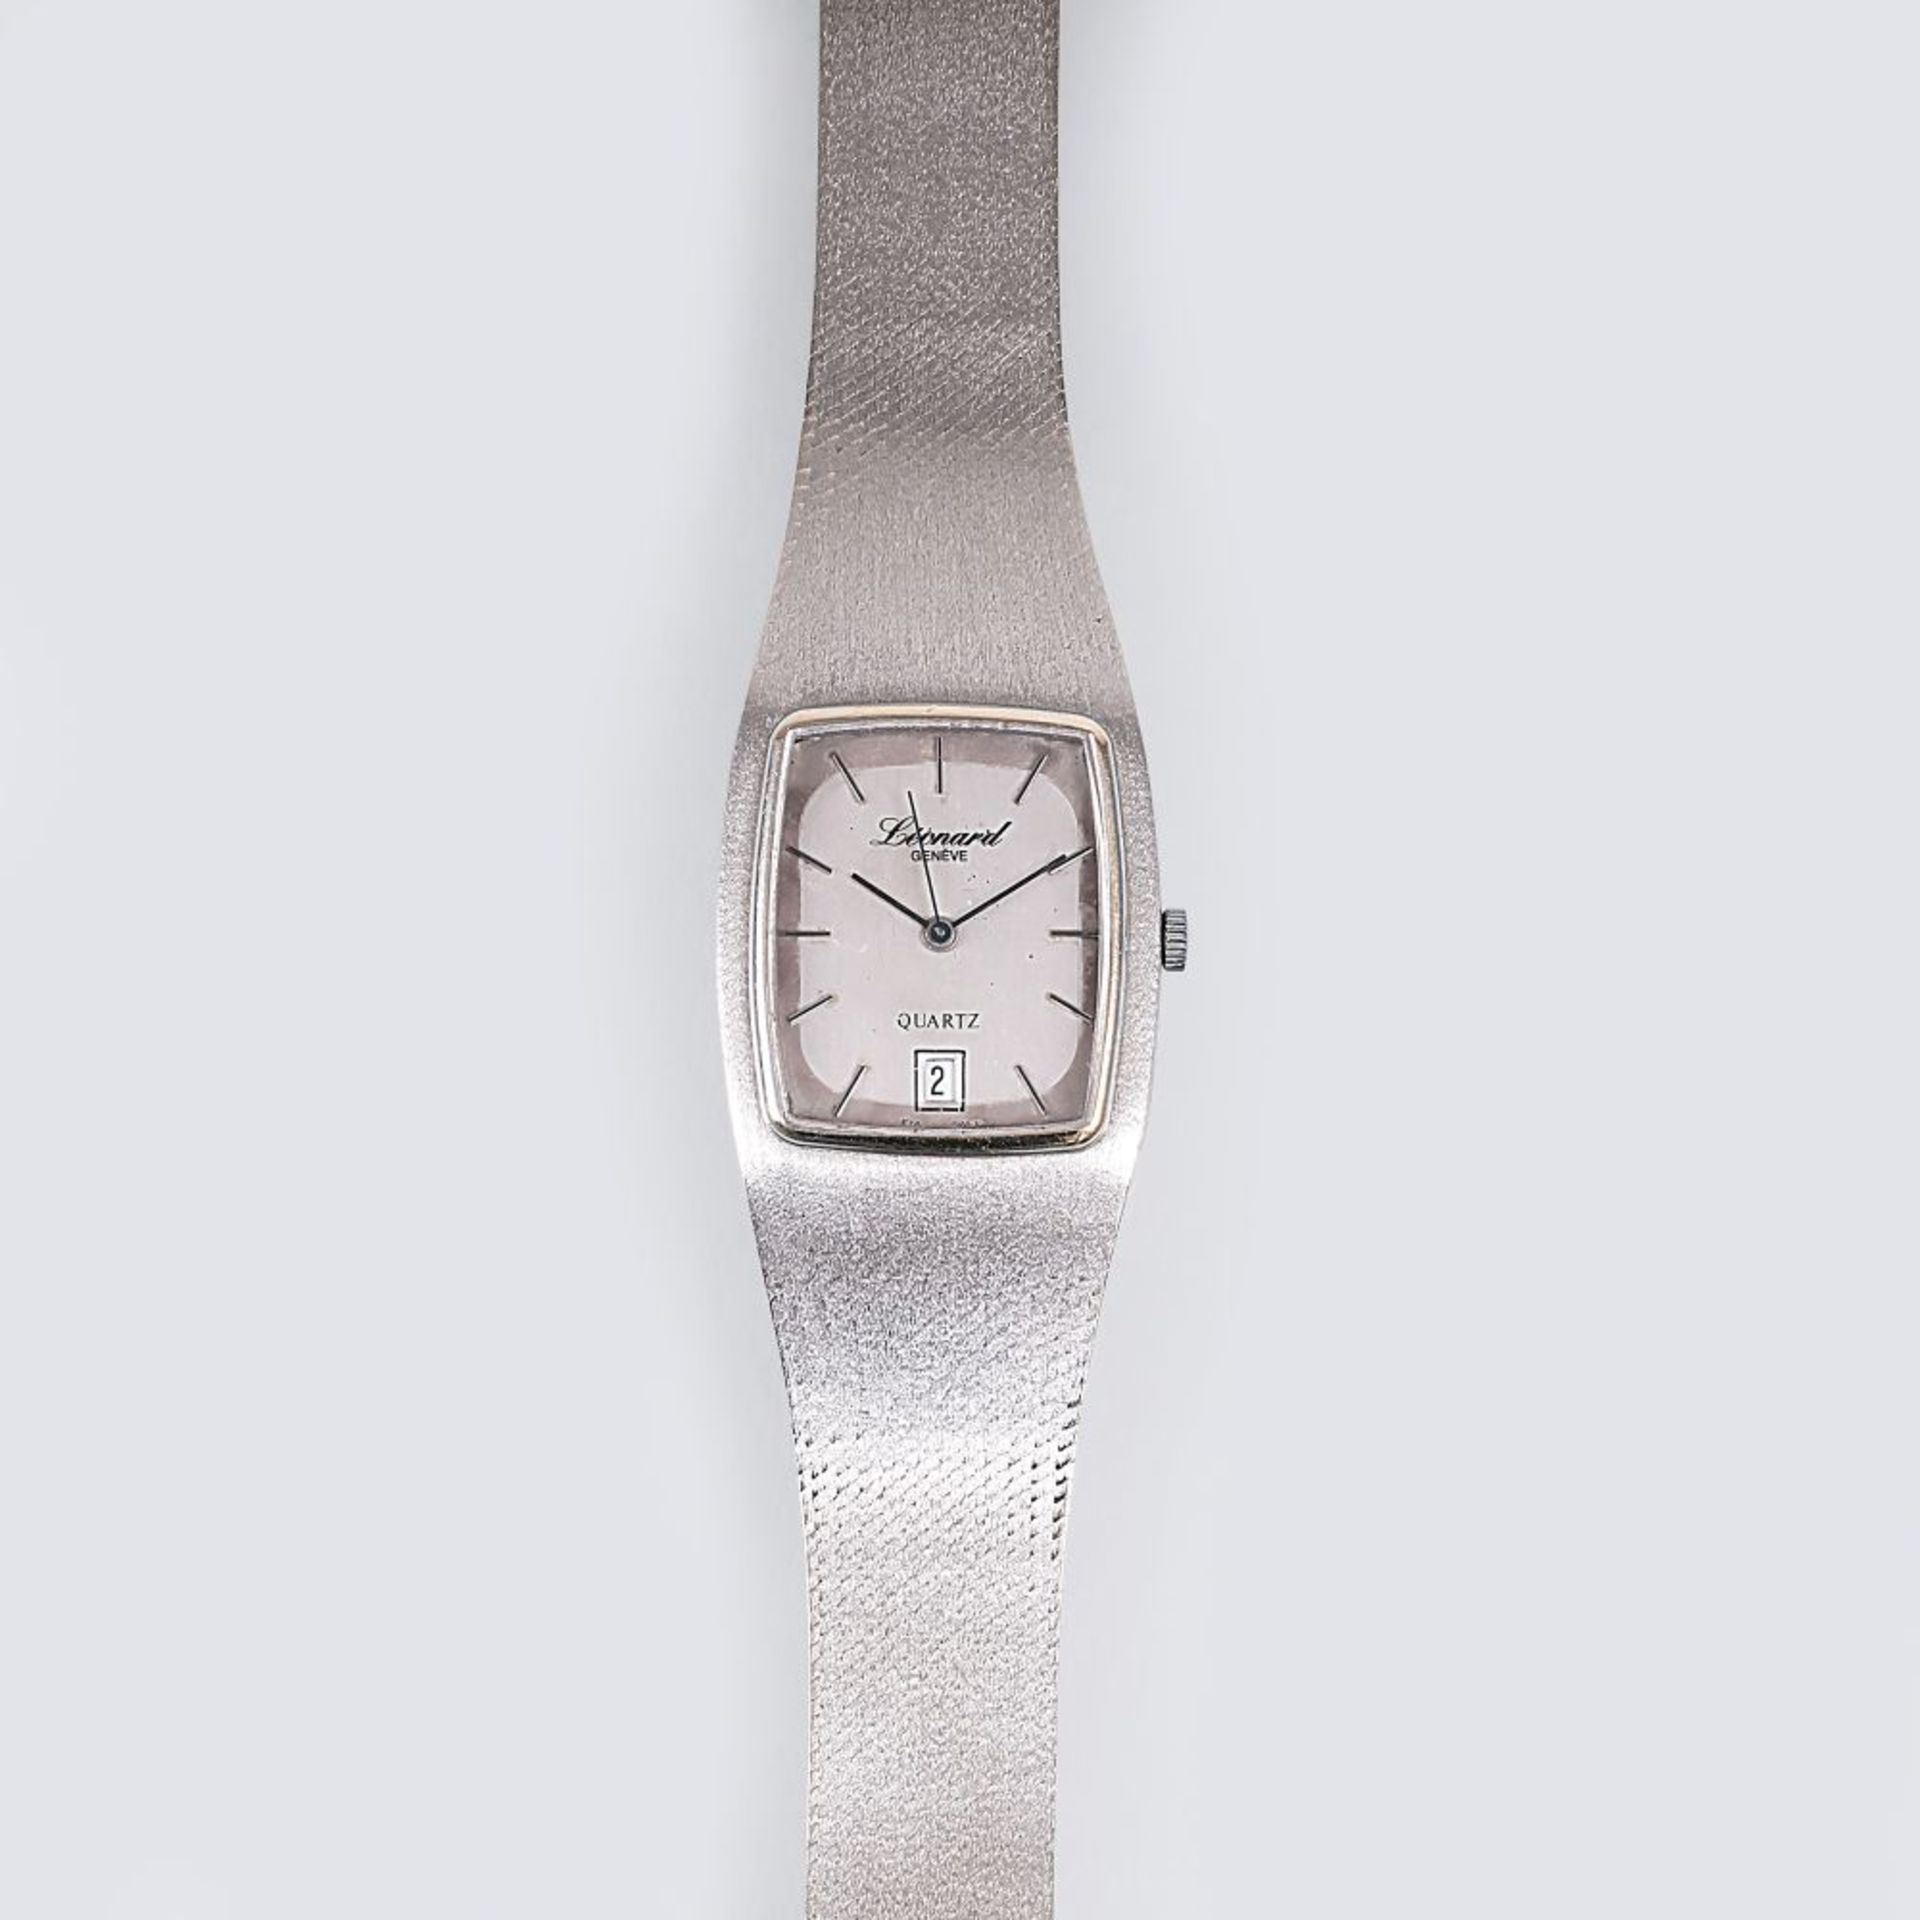 Vintage Herren-Armbanduhr. Um 1970. 14 kt. WG, gest. Silberfarbenes Zifferblatt, Indizes,